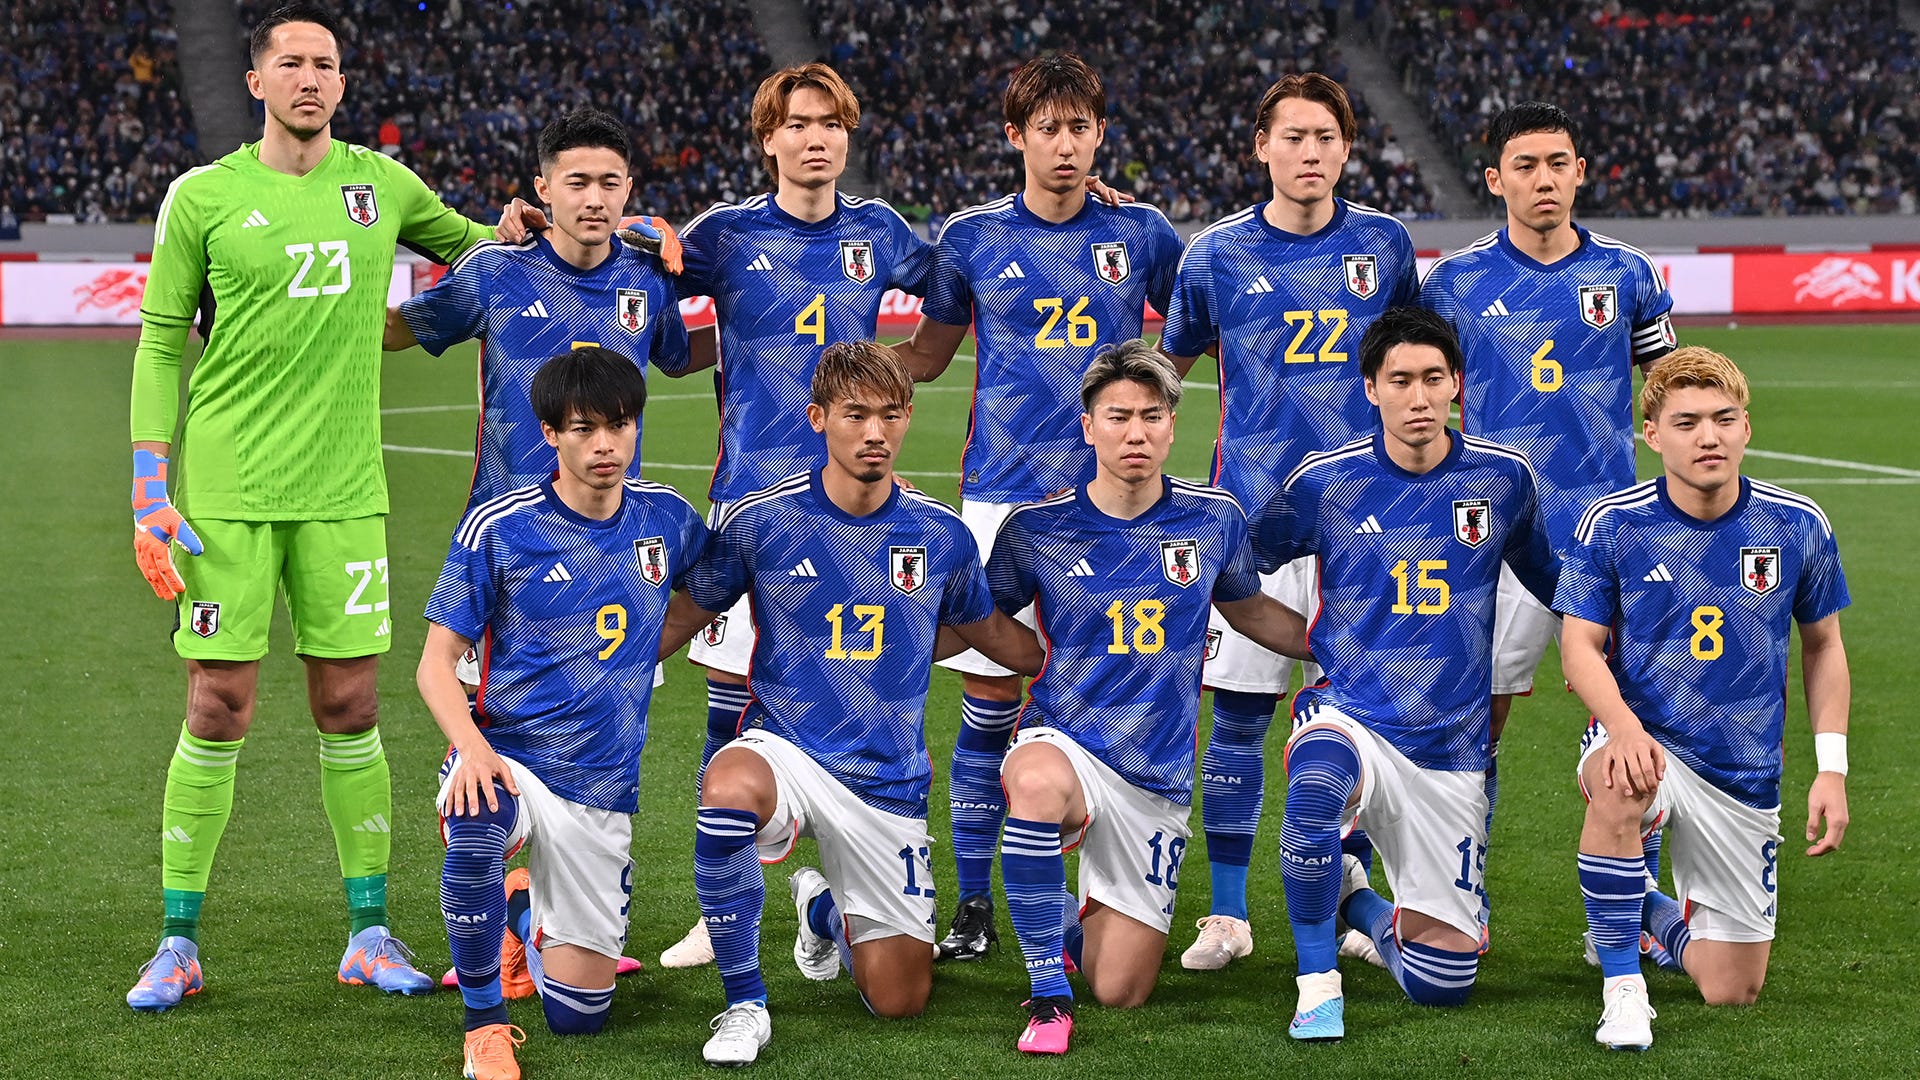 デフサッカー/フットサル日本代表もサムライブルーと同じユニフォーム